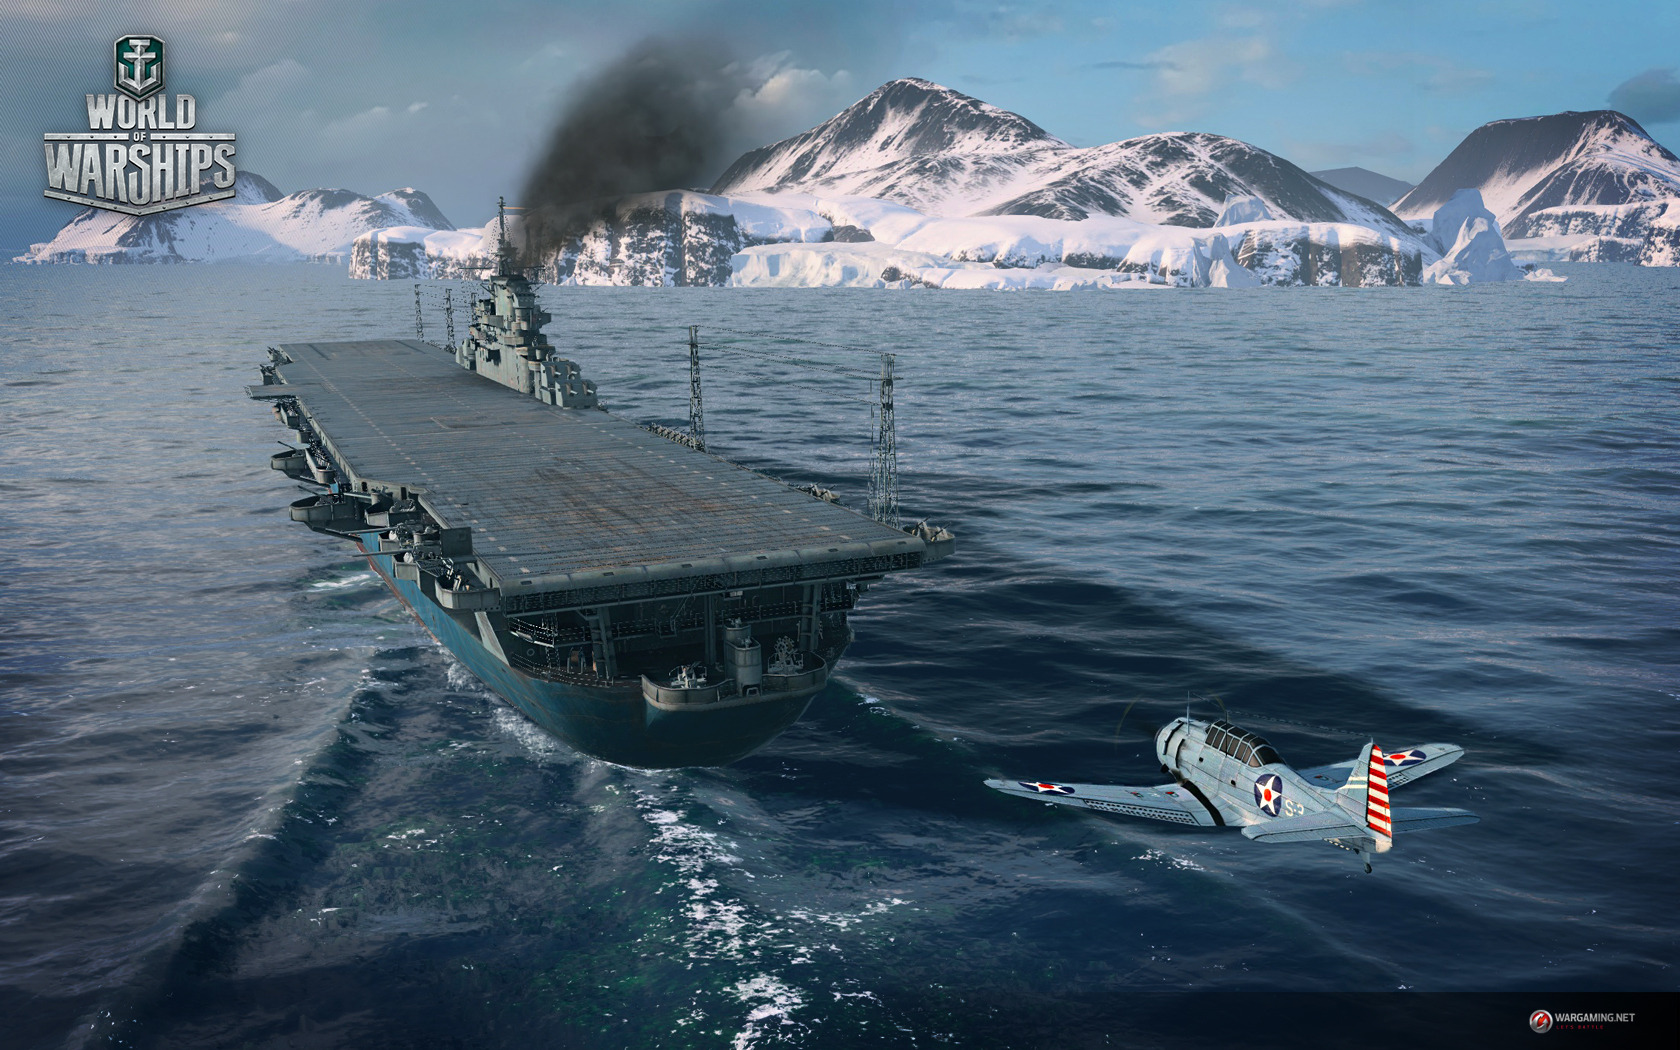 壁紙 World Of Warship 船 Wargaming Net Wows Bismarck ゲーム